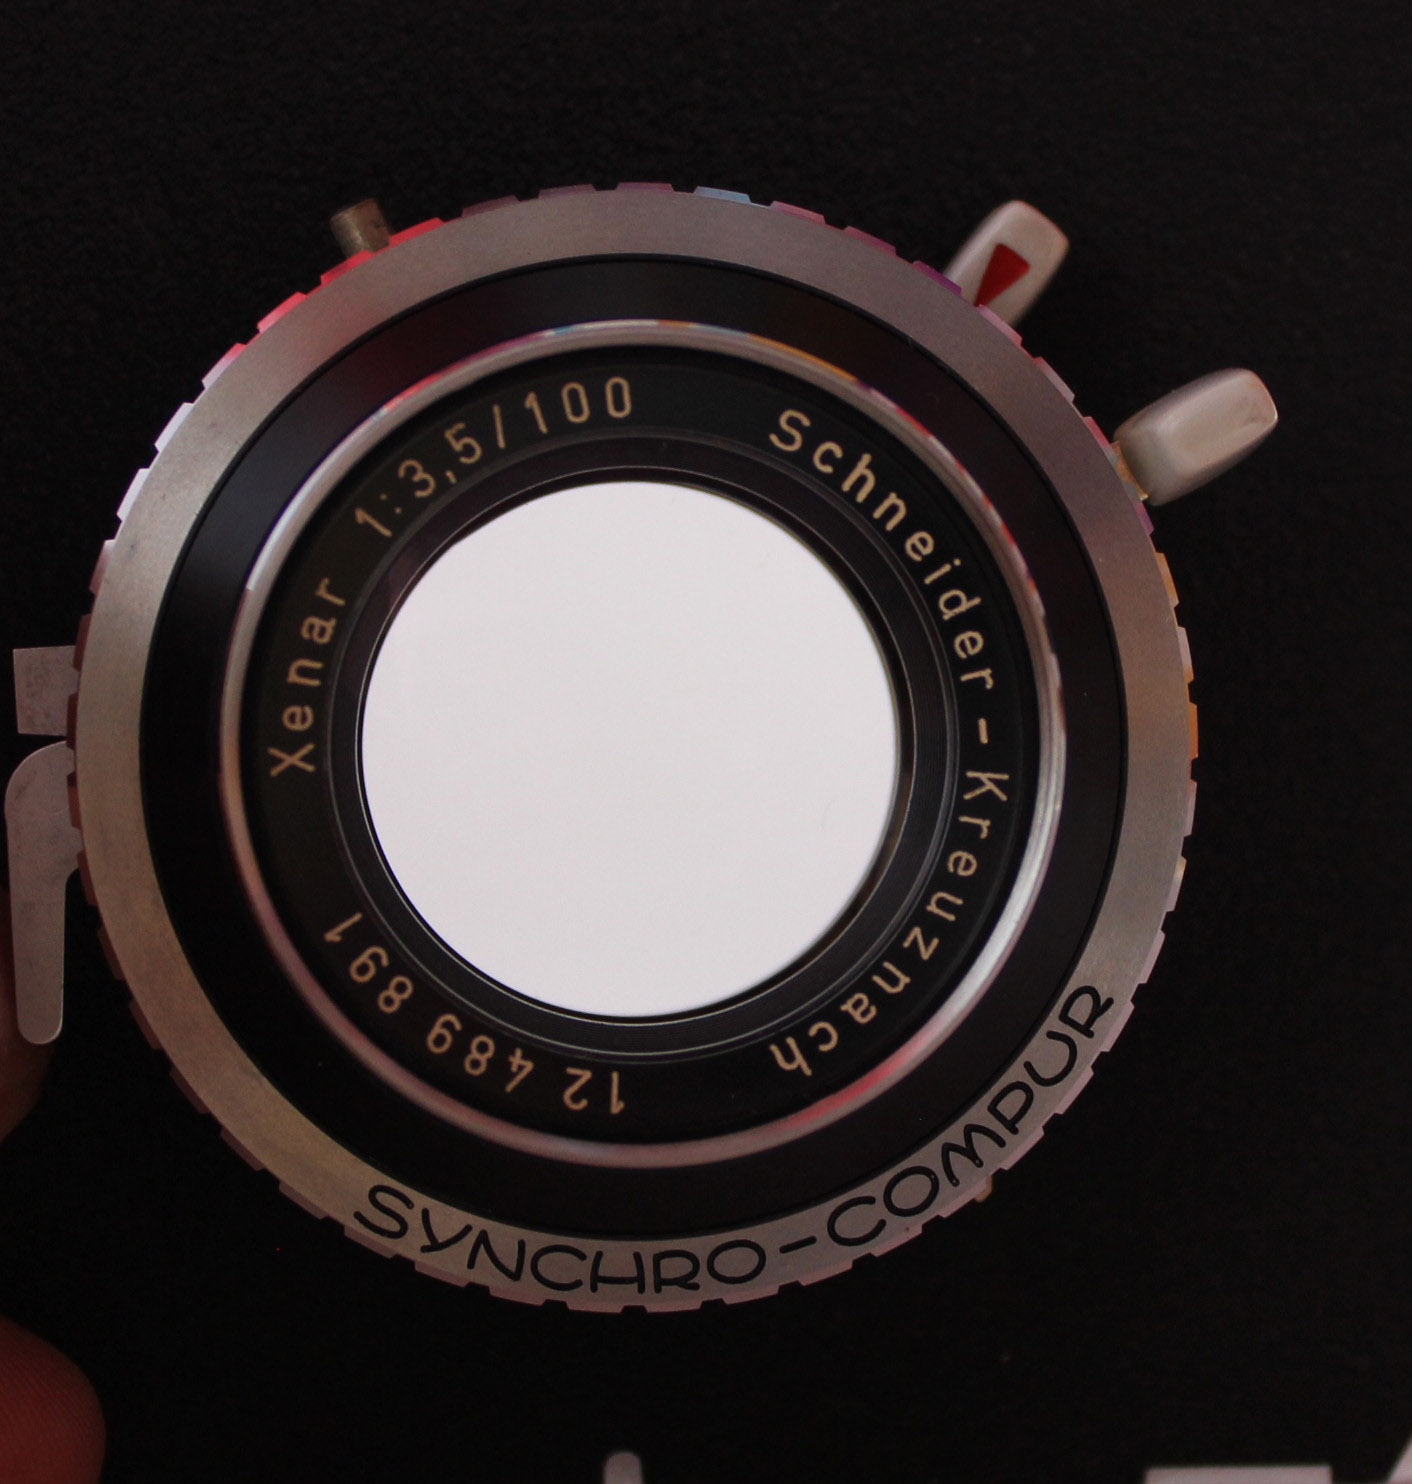  Schneider Kreuznach Xenar 100mm F/3.5 Lens Linhof 4x5 from Japan Photo 7